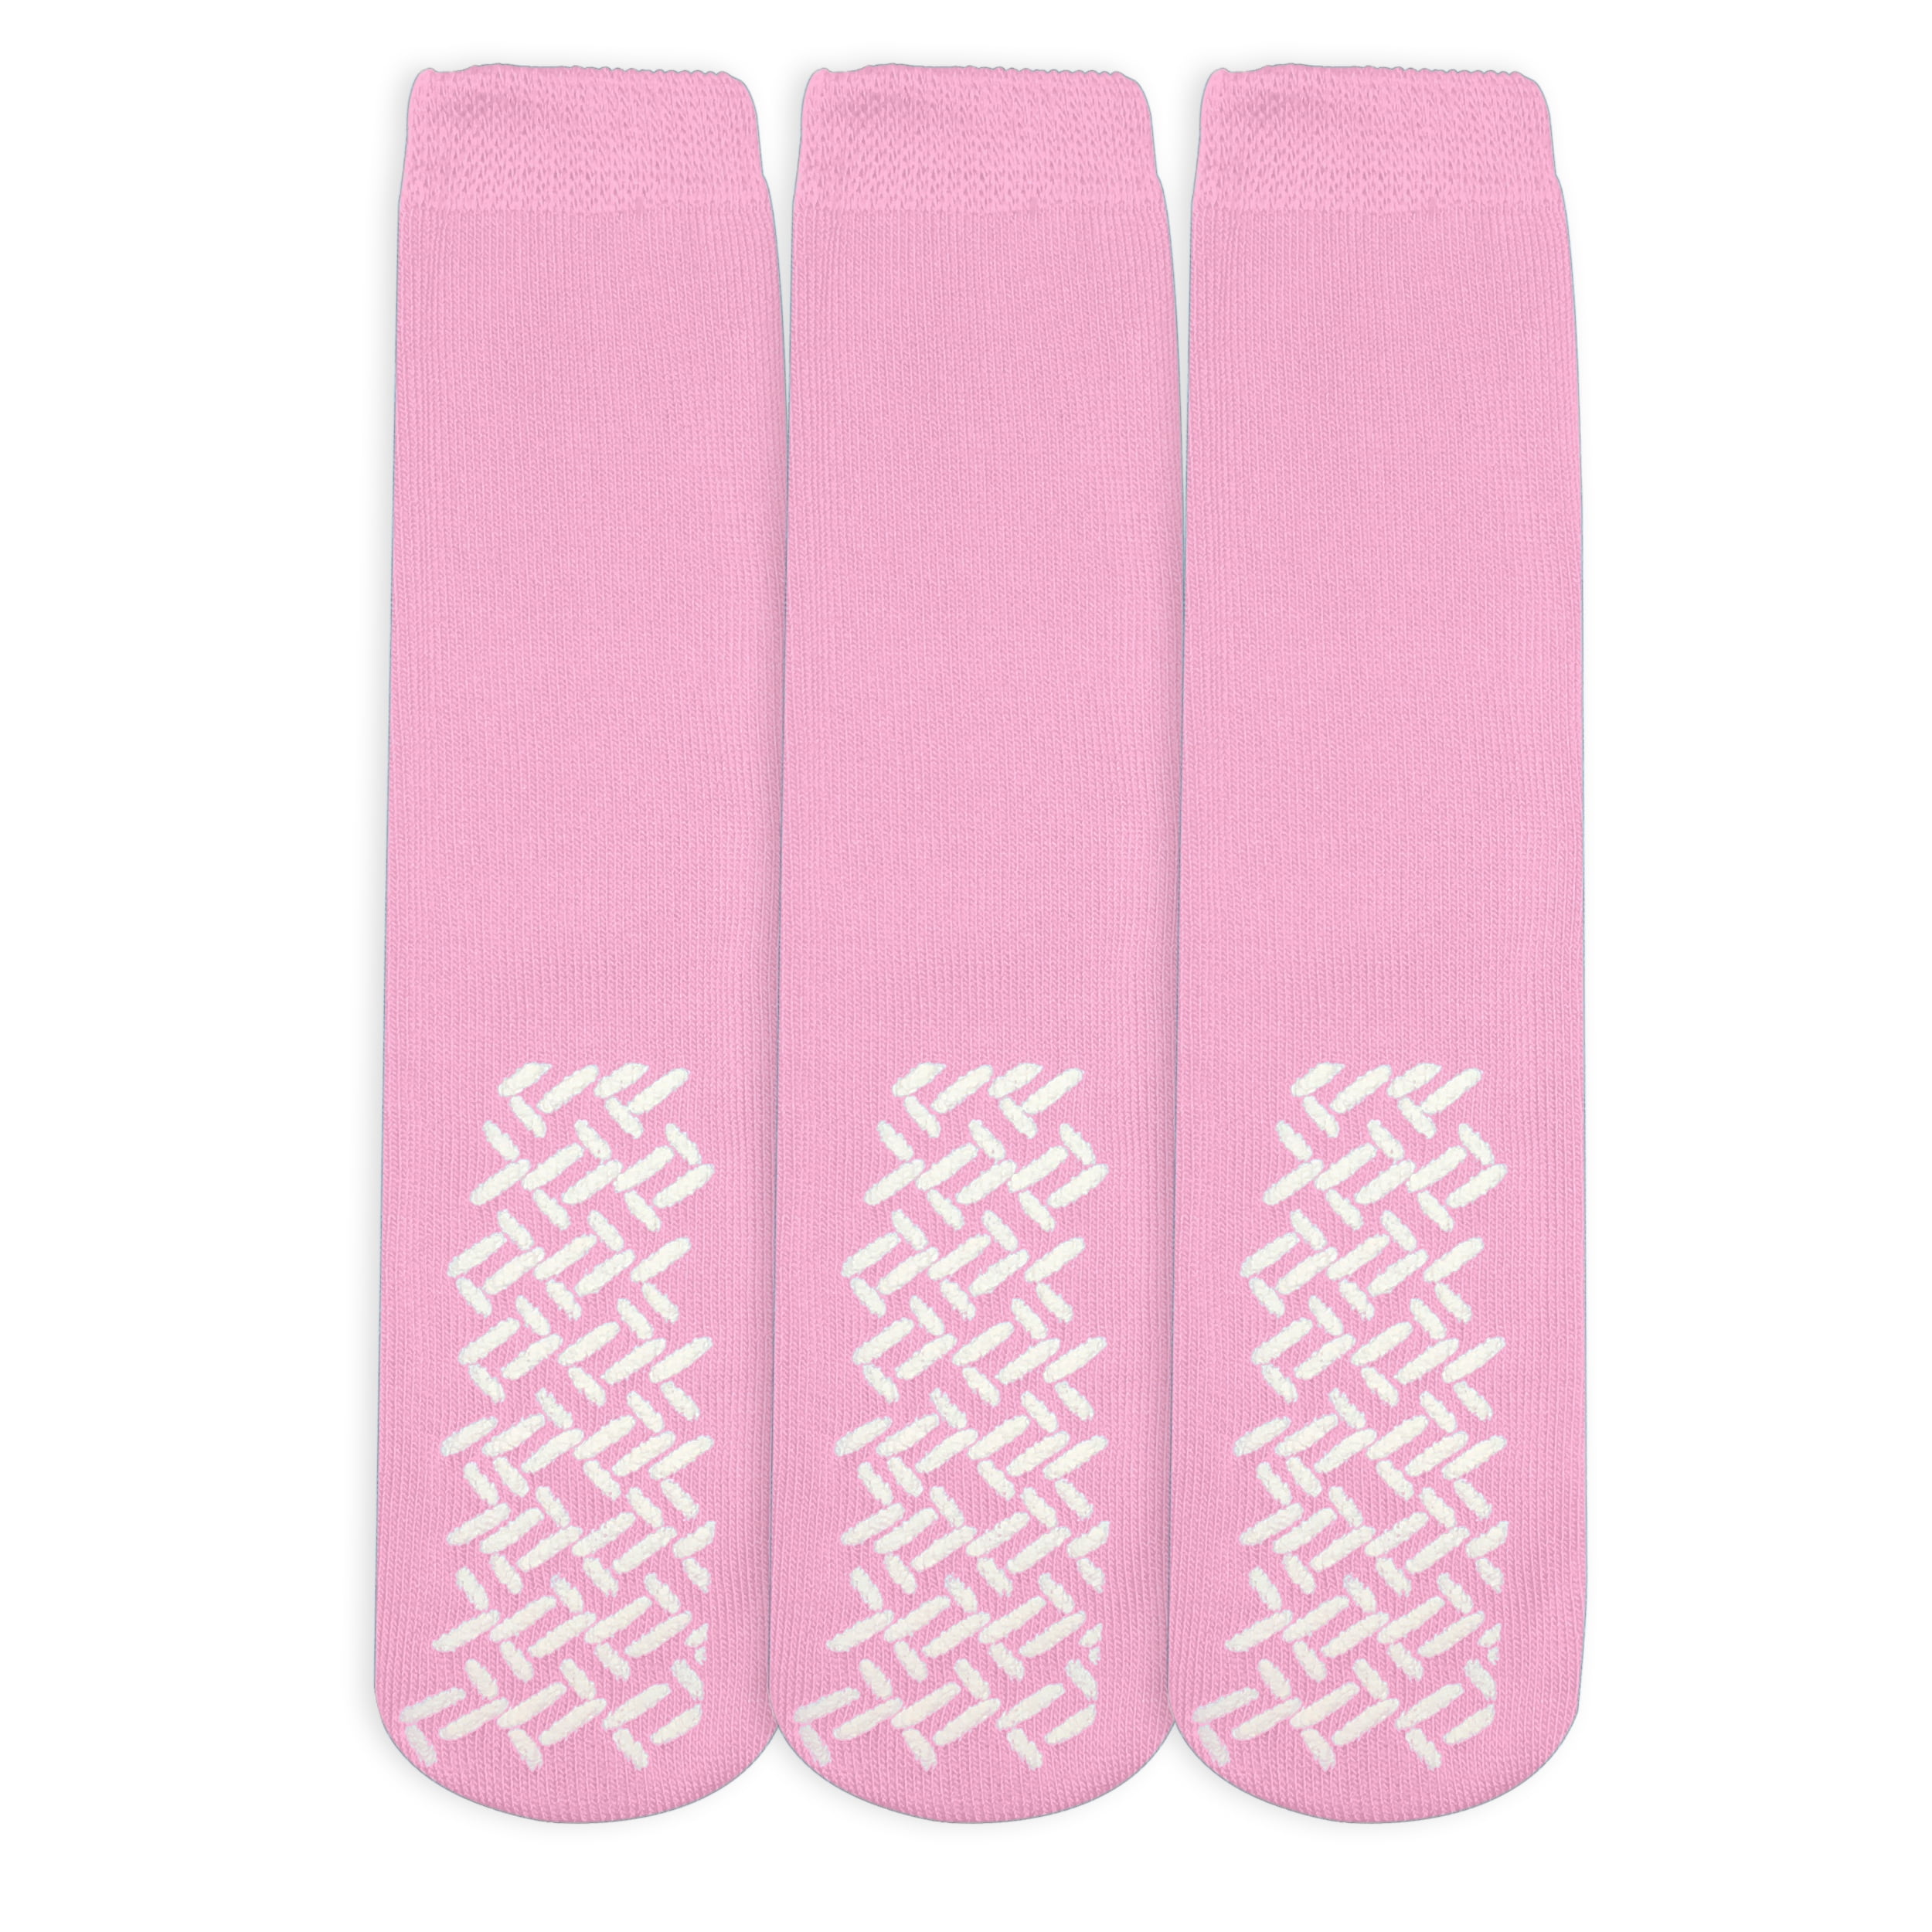 SOCKS'NBULK Mens Thermal Slipper Socks, Non-Skid with Gripper Bottom,  Hospital Tube Socks,(6 Pairs Assorted B, (10-13))